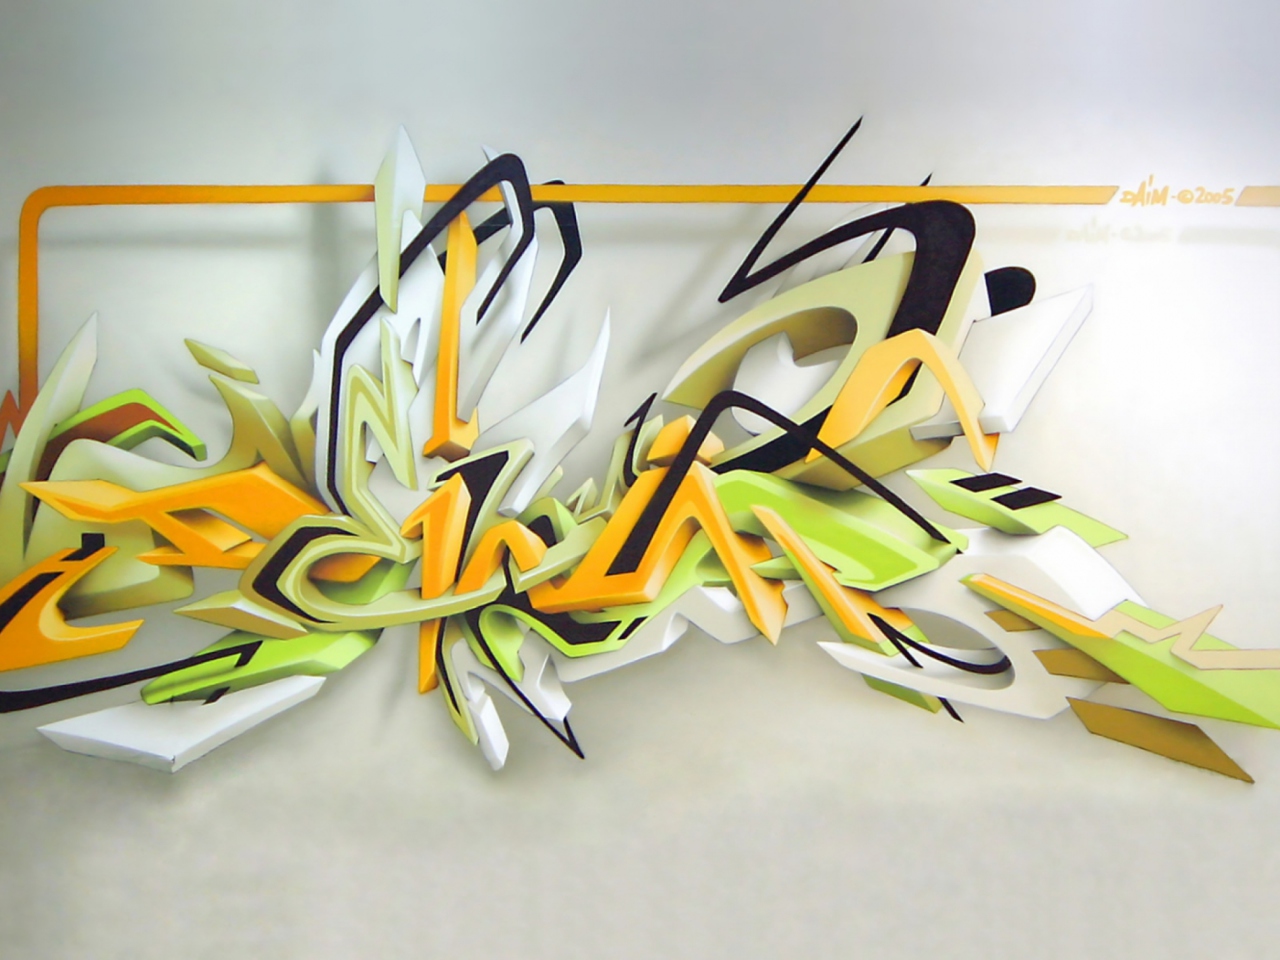 Fondo de pantalla Graffiti: Daim 3D 1280x960